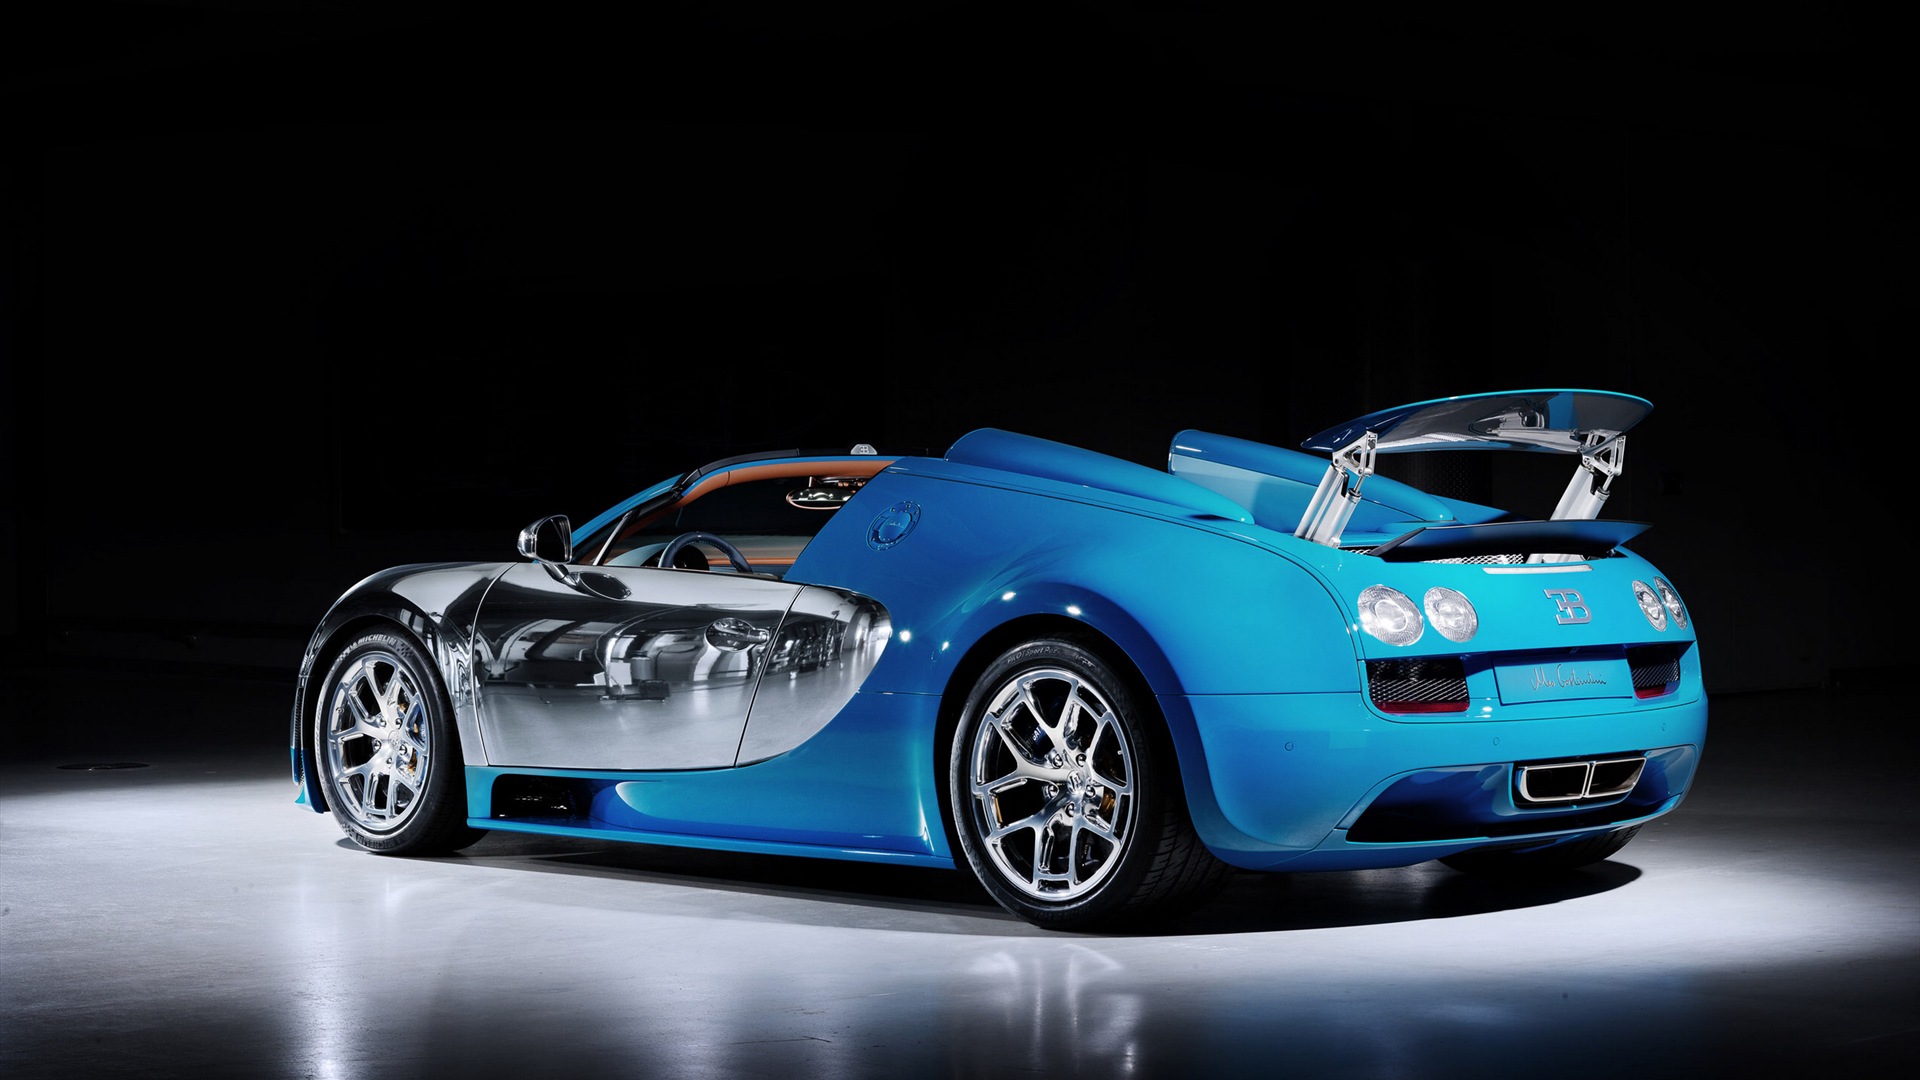 2013 Bugatti Veyron 16.4 Grand Sport Vitesse supercar fondos de pantalla de alta definición #9 - 1920x1080